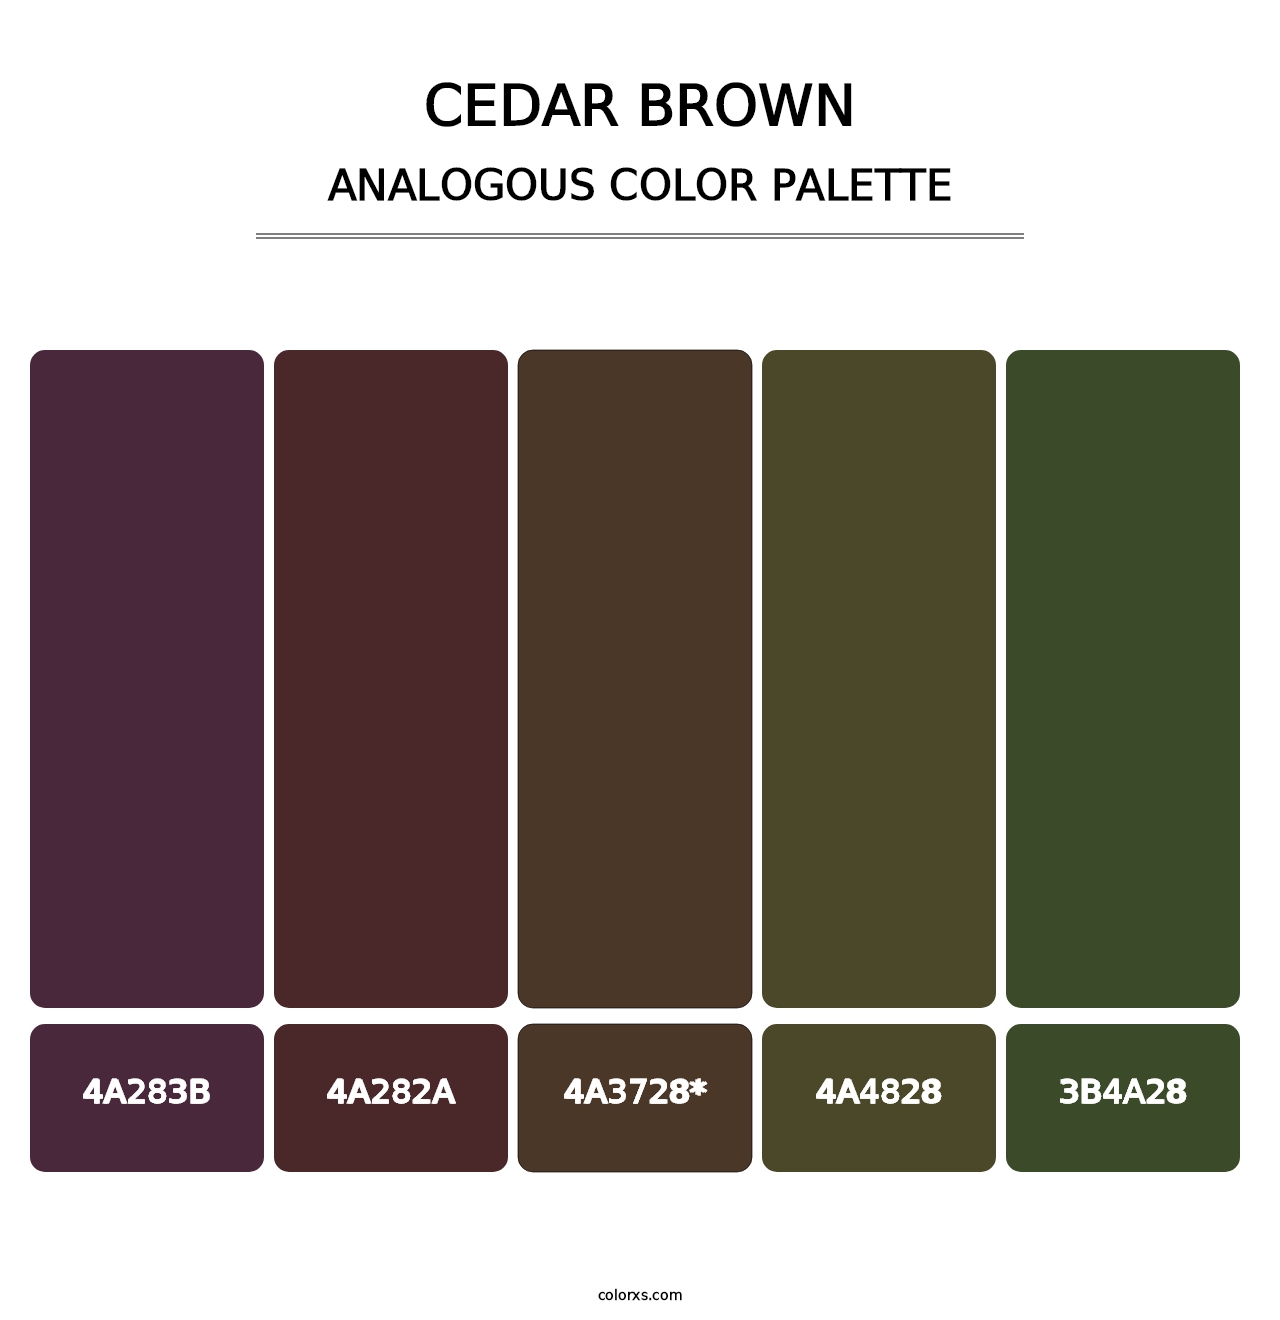 Cedar Brown - Analogous Color Palette